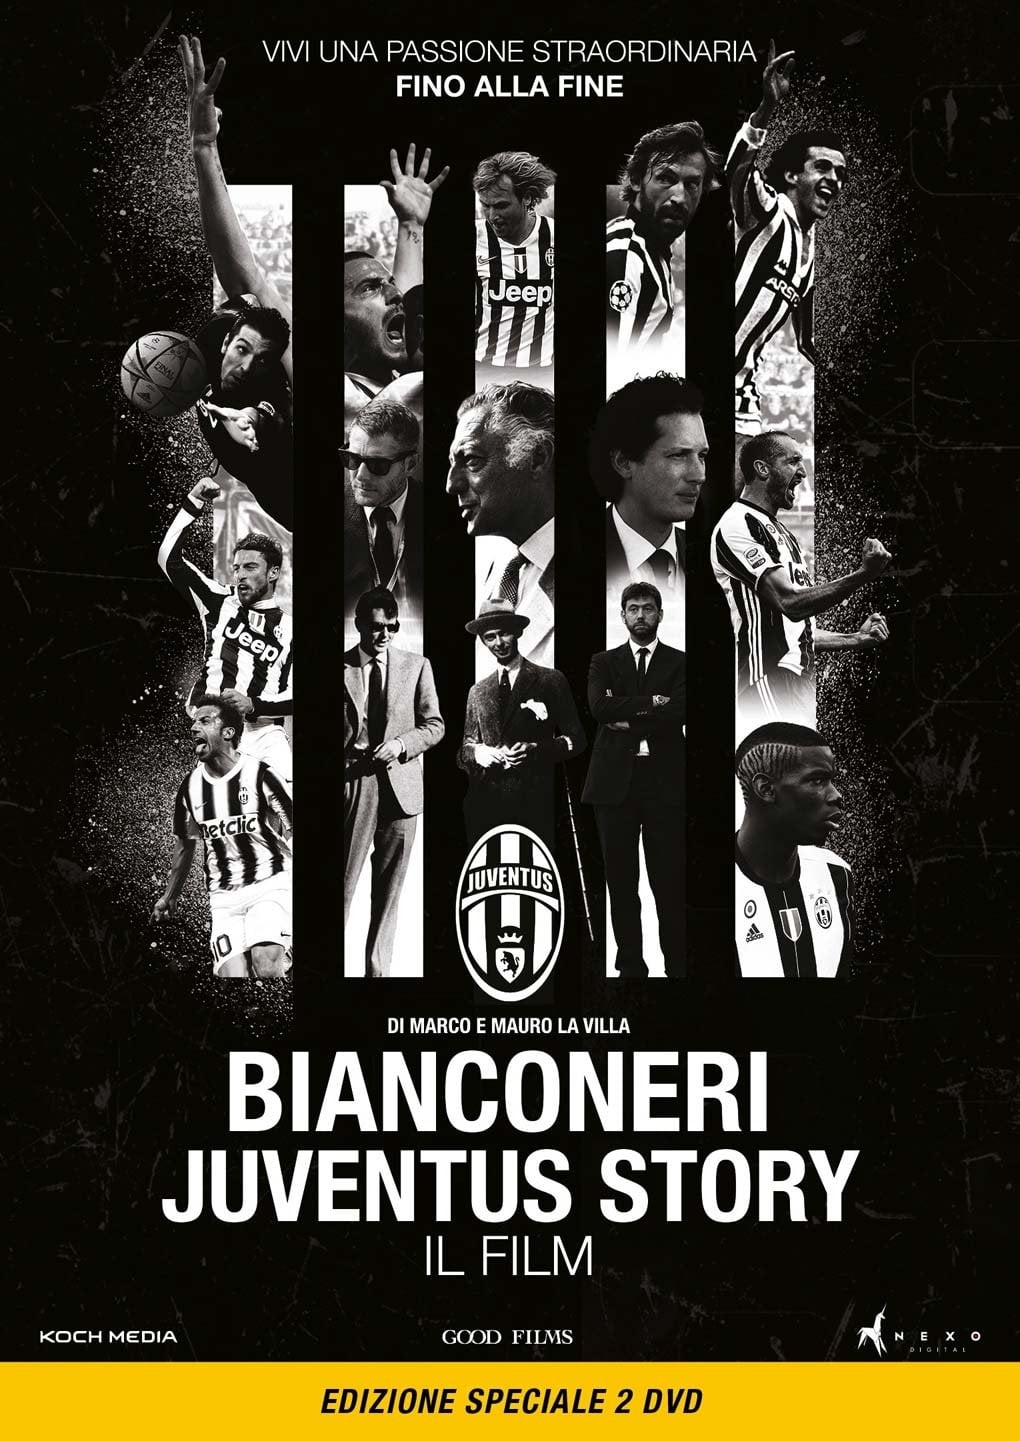 La vecchia signora: historia de la Juventus